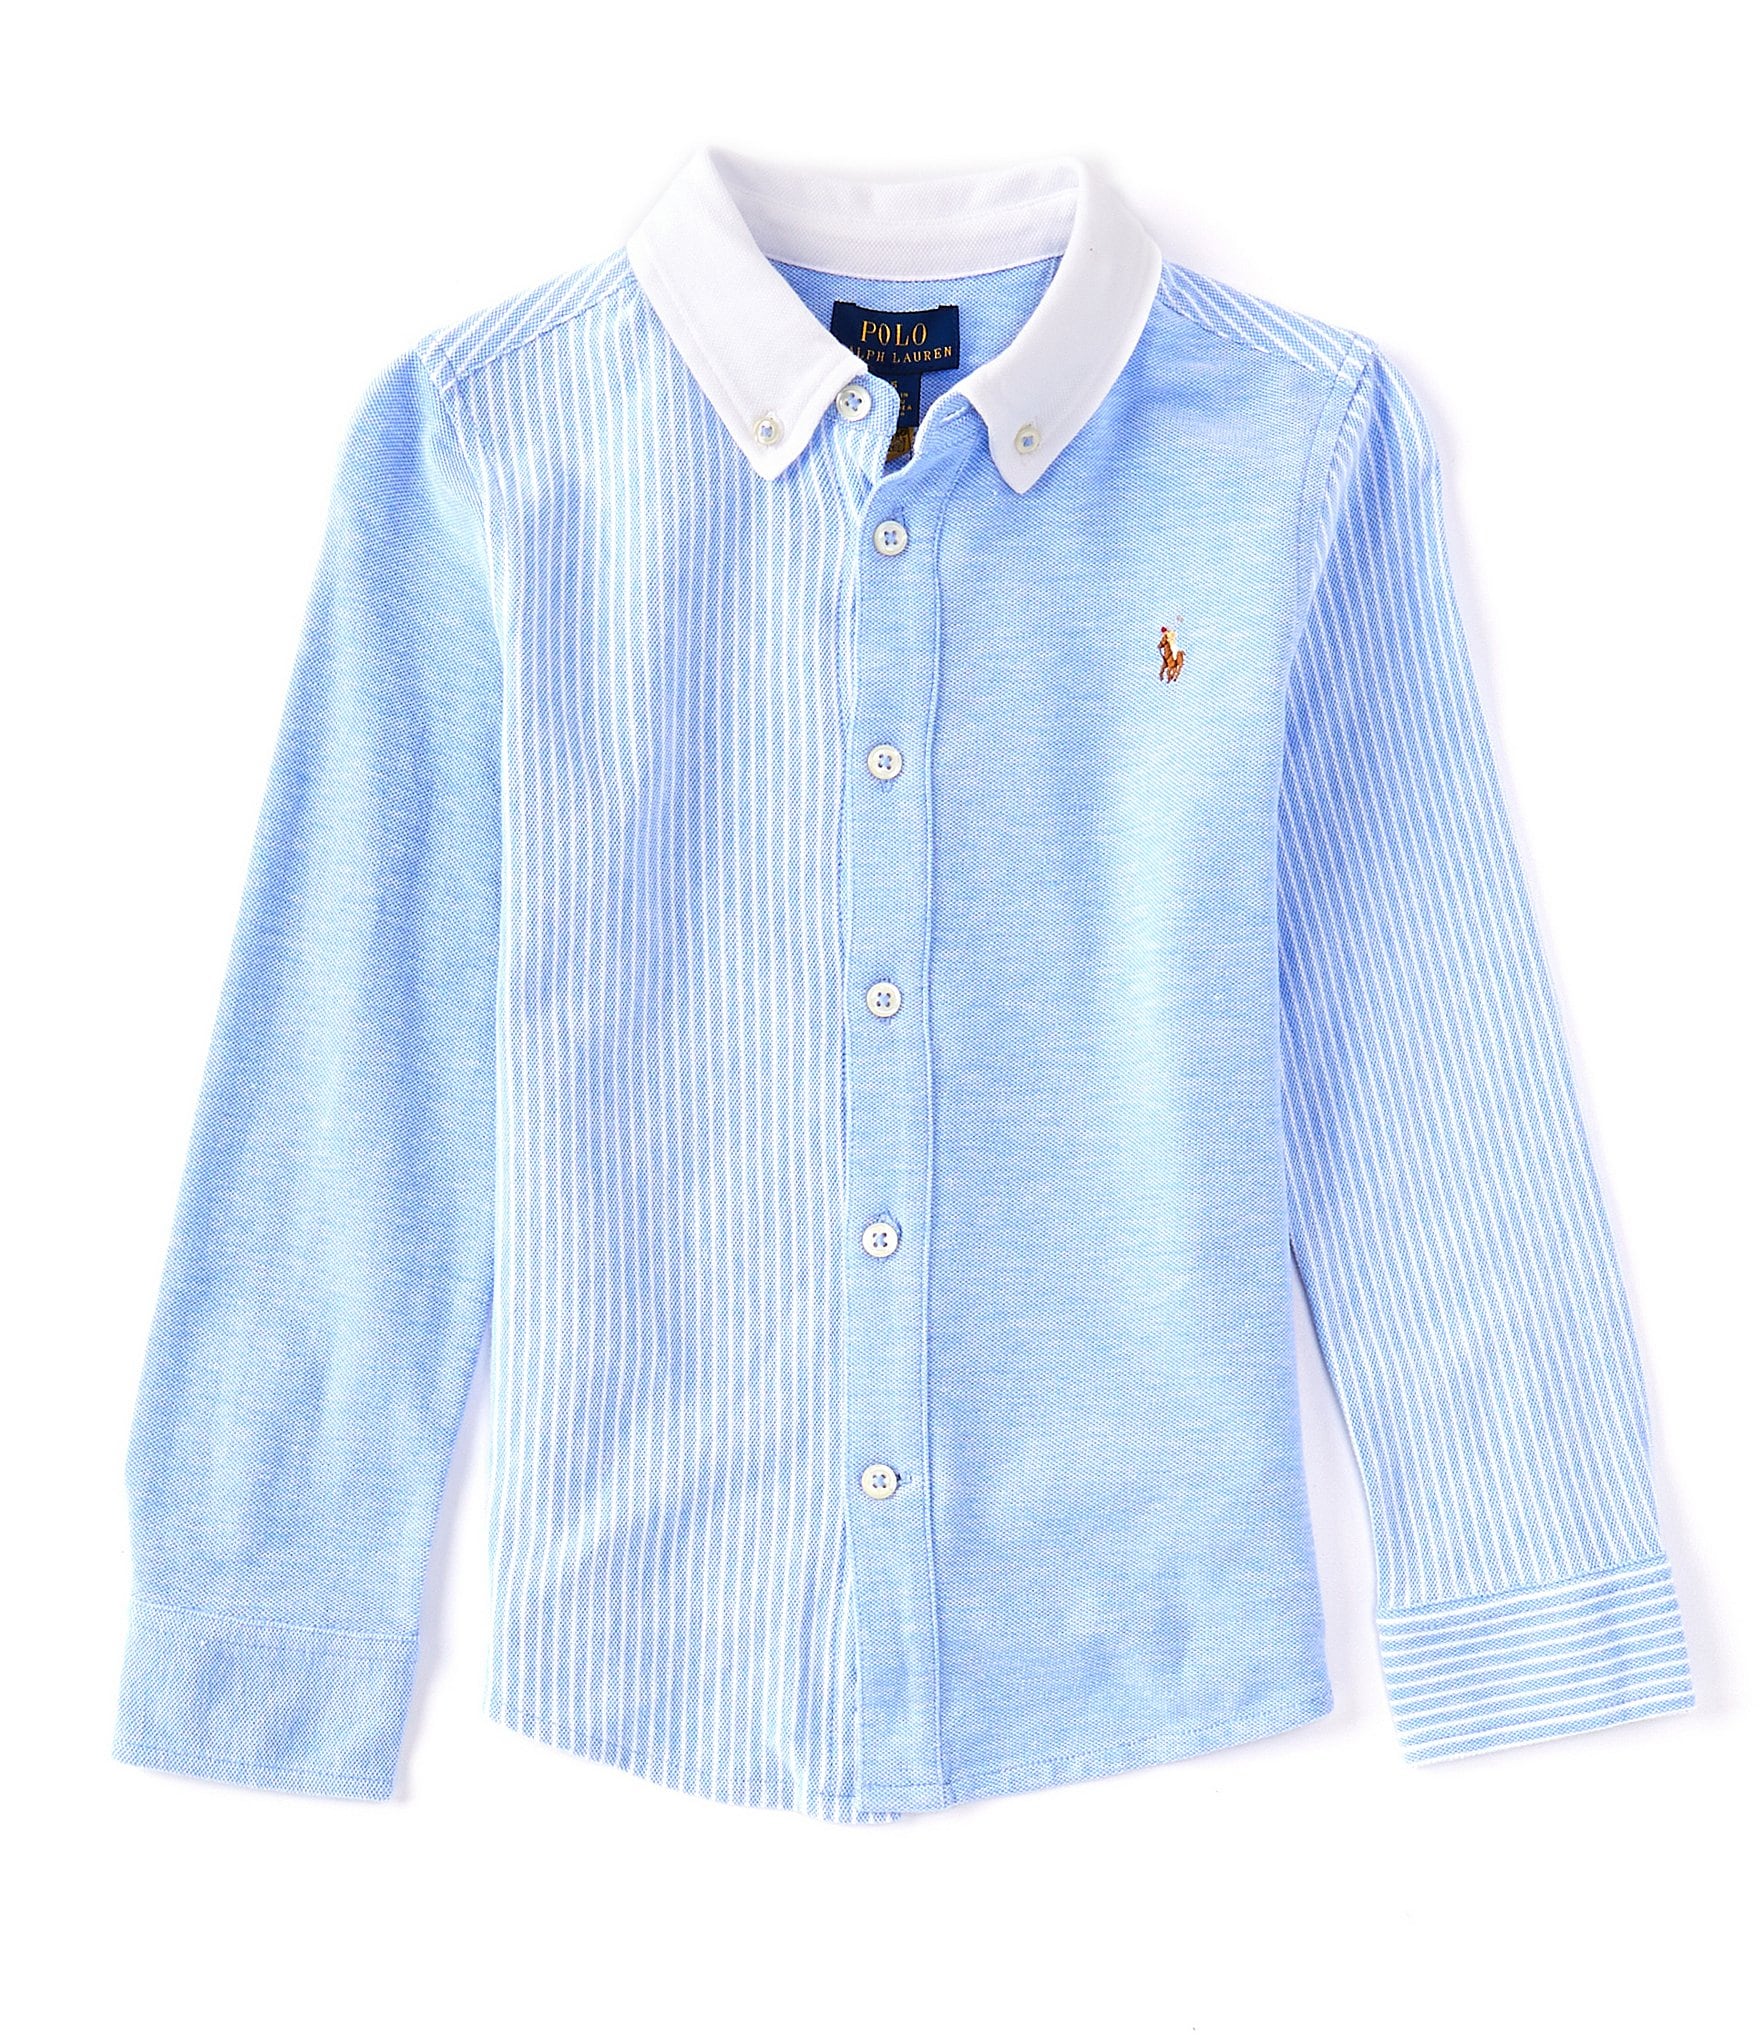 Polo Ralph Lauren Little Boys 2T-7 Long Sleeve Knit Oxford Fun Shirt |